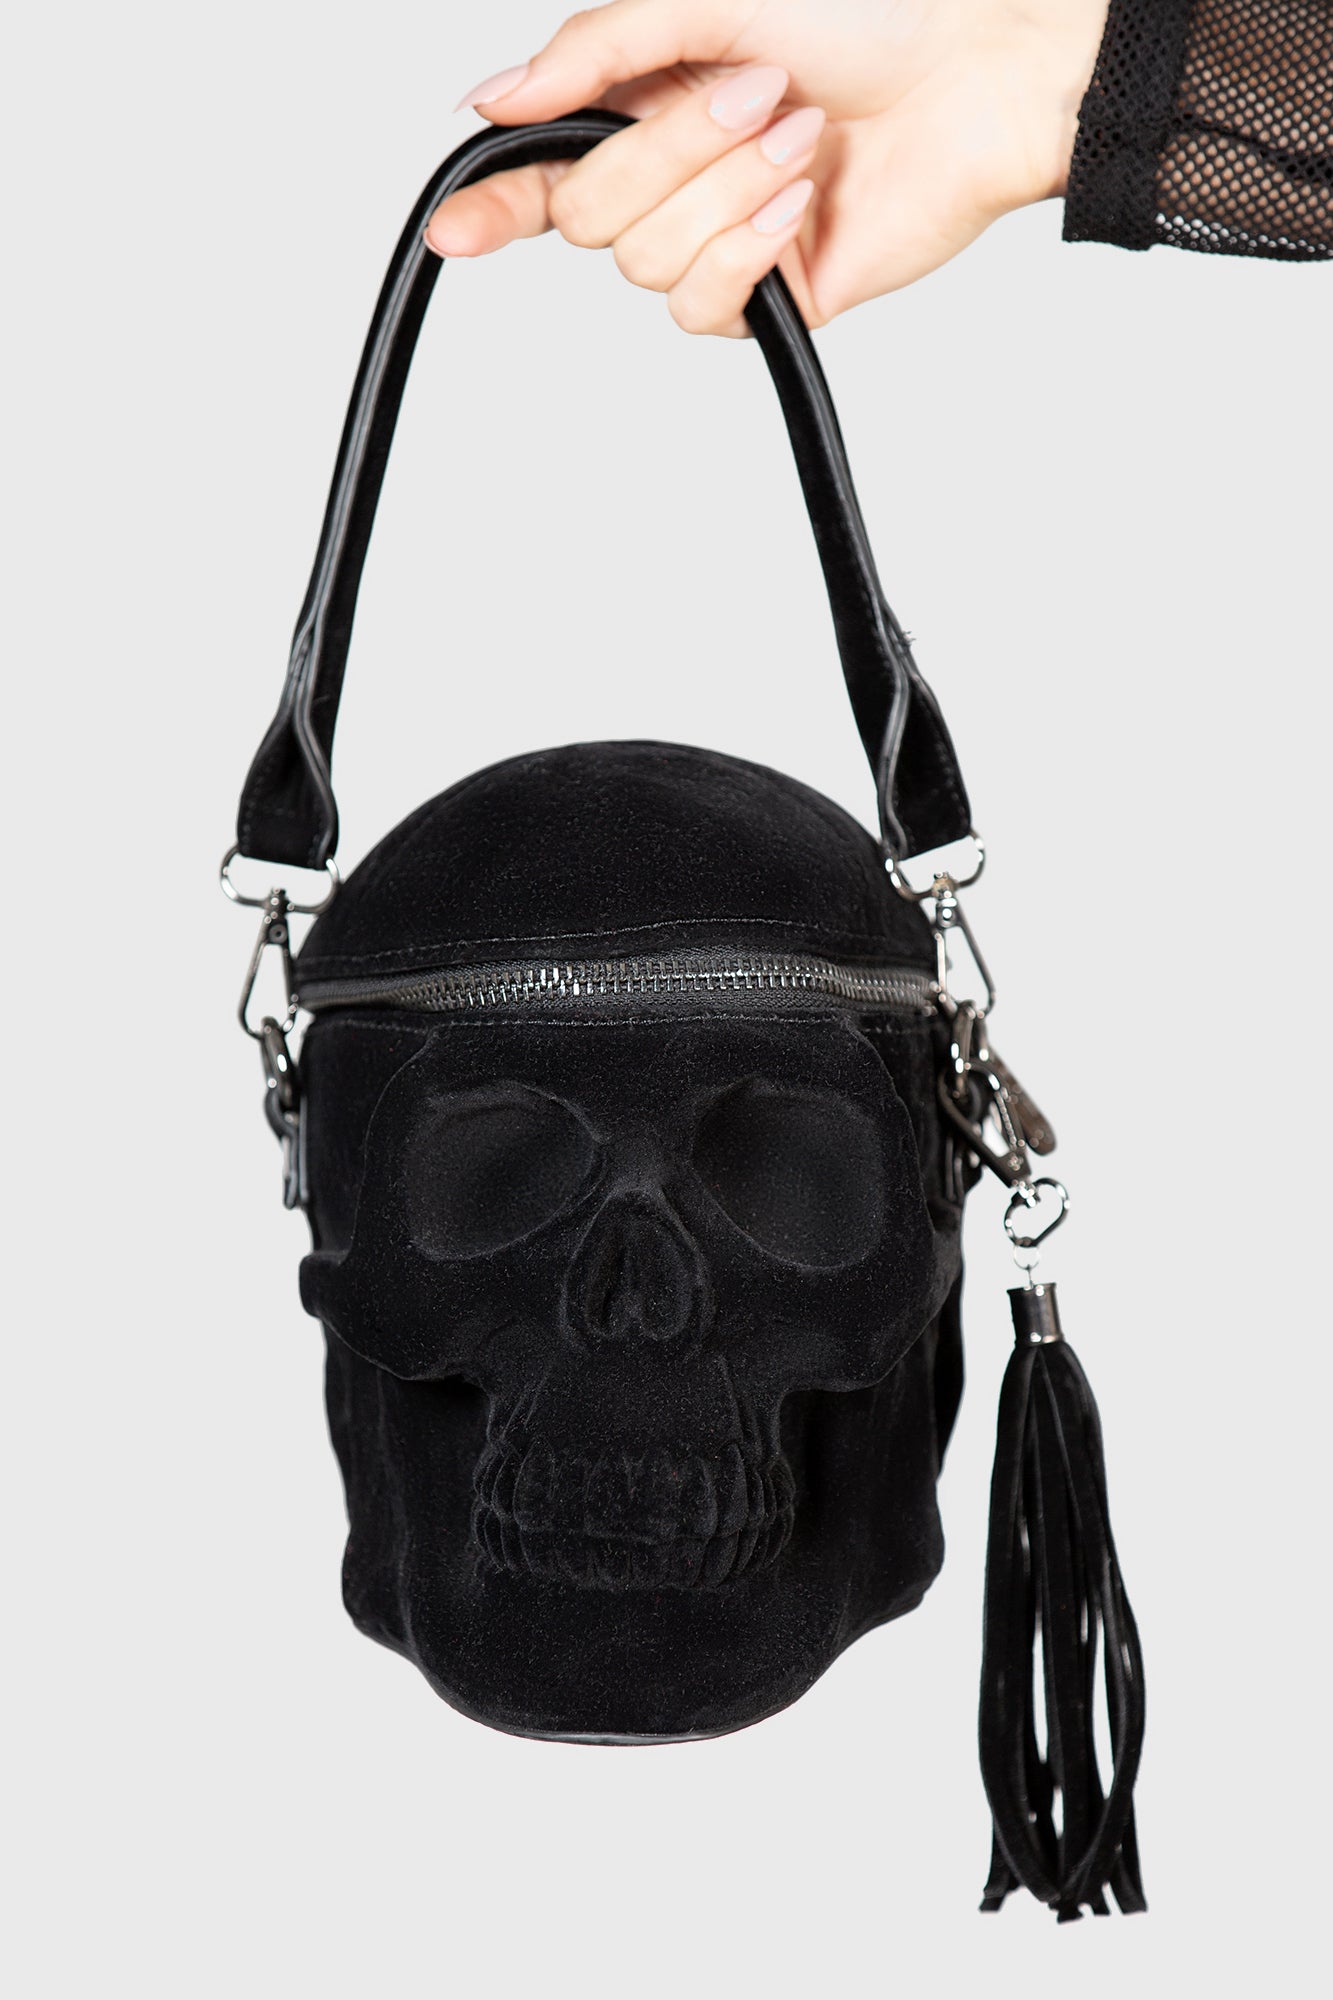 Skull Western Studded Rhinestone Purse Concealed Carry Shoulder Bag Handbag  - Hot Pink - C9184EGDO64 | Shoulder bag, Pink duffle bag, Purses